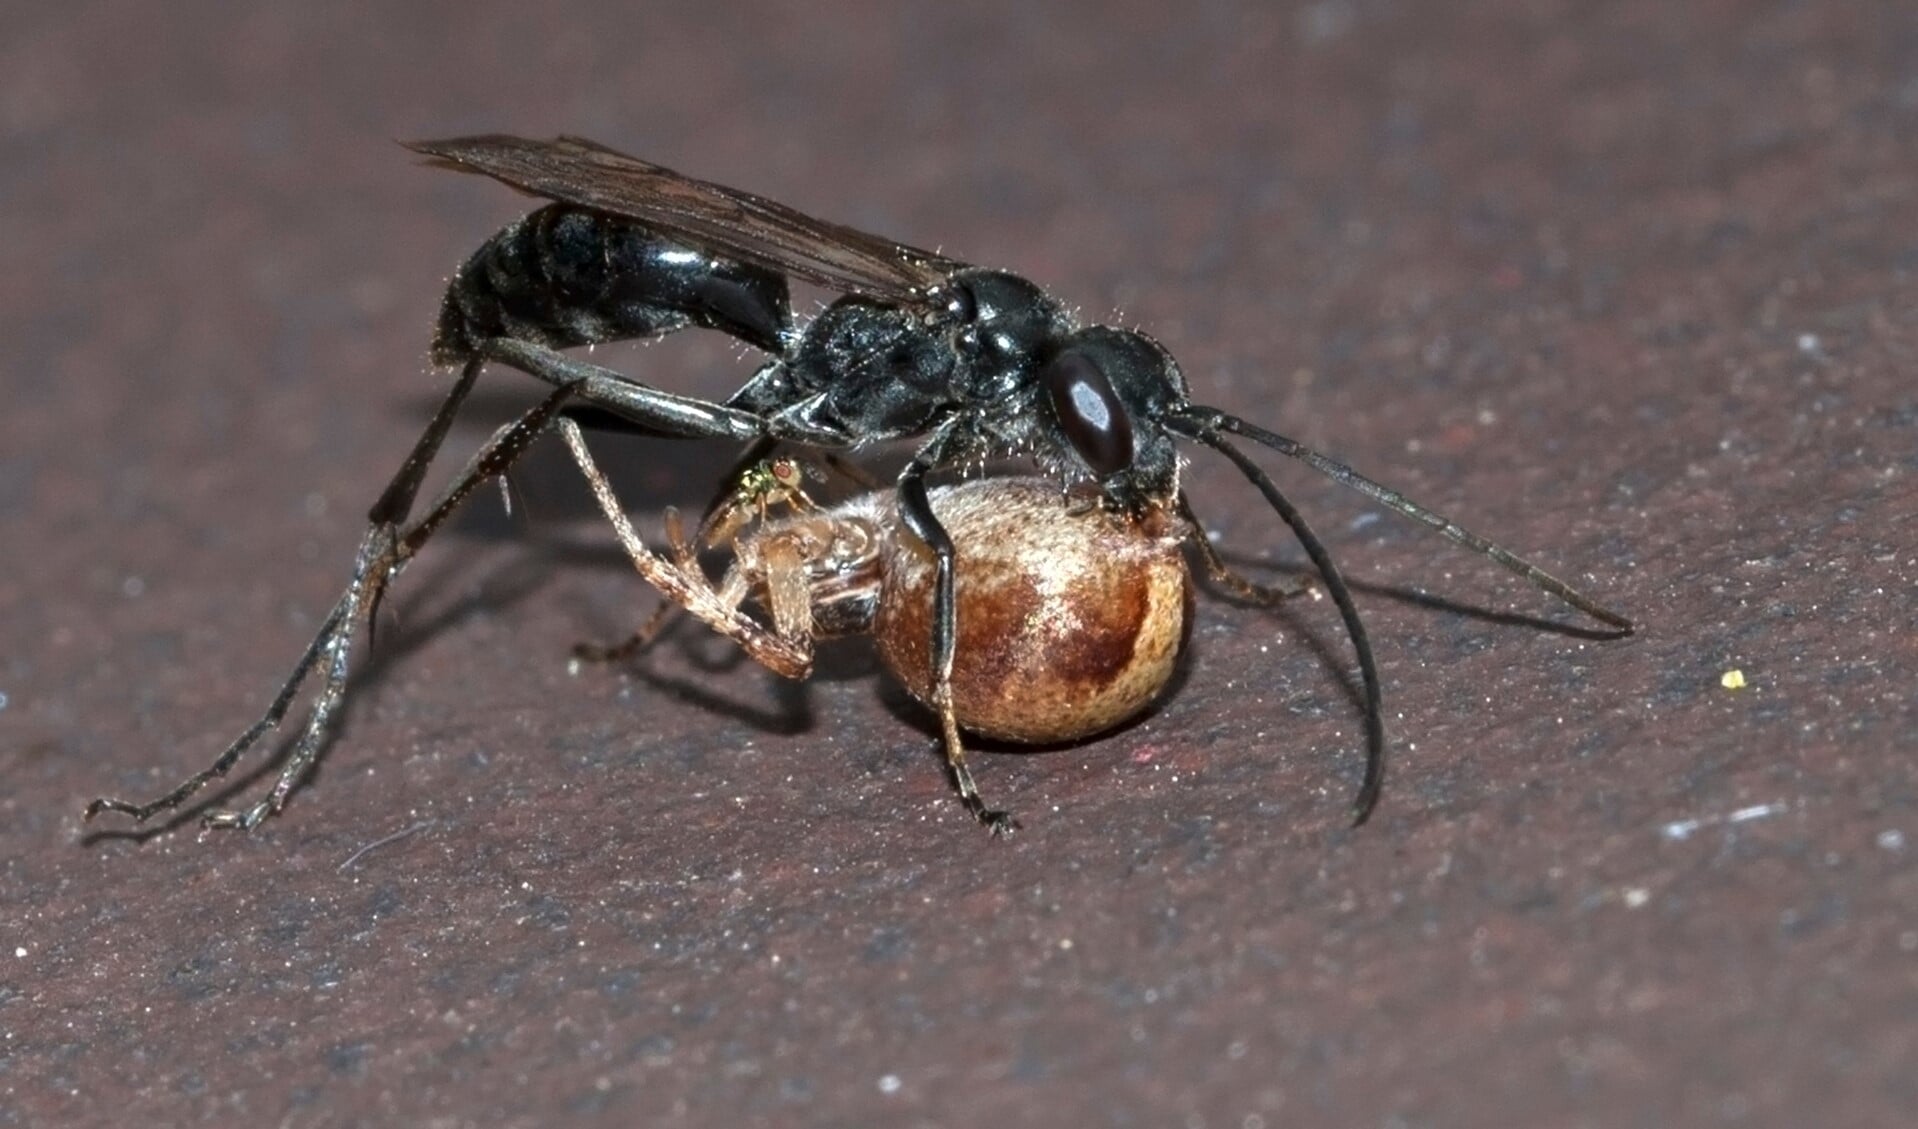 Tussen de zwarte wesp en de spin ziet Frans Jansen nog een klein wespje. Foto: Frans M. Jansen.